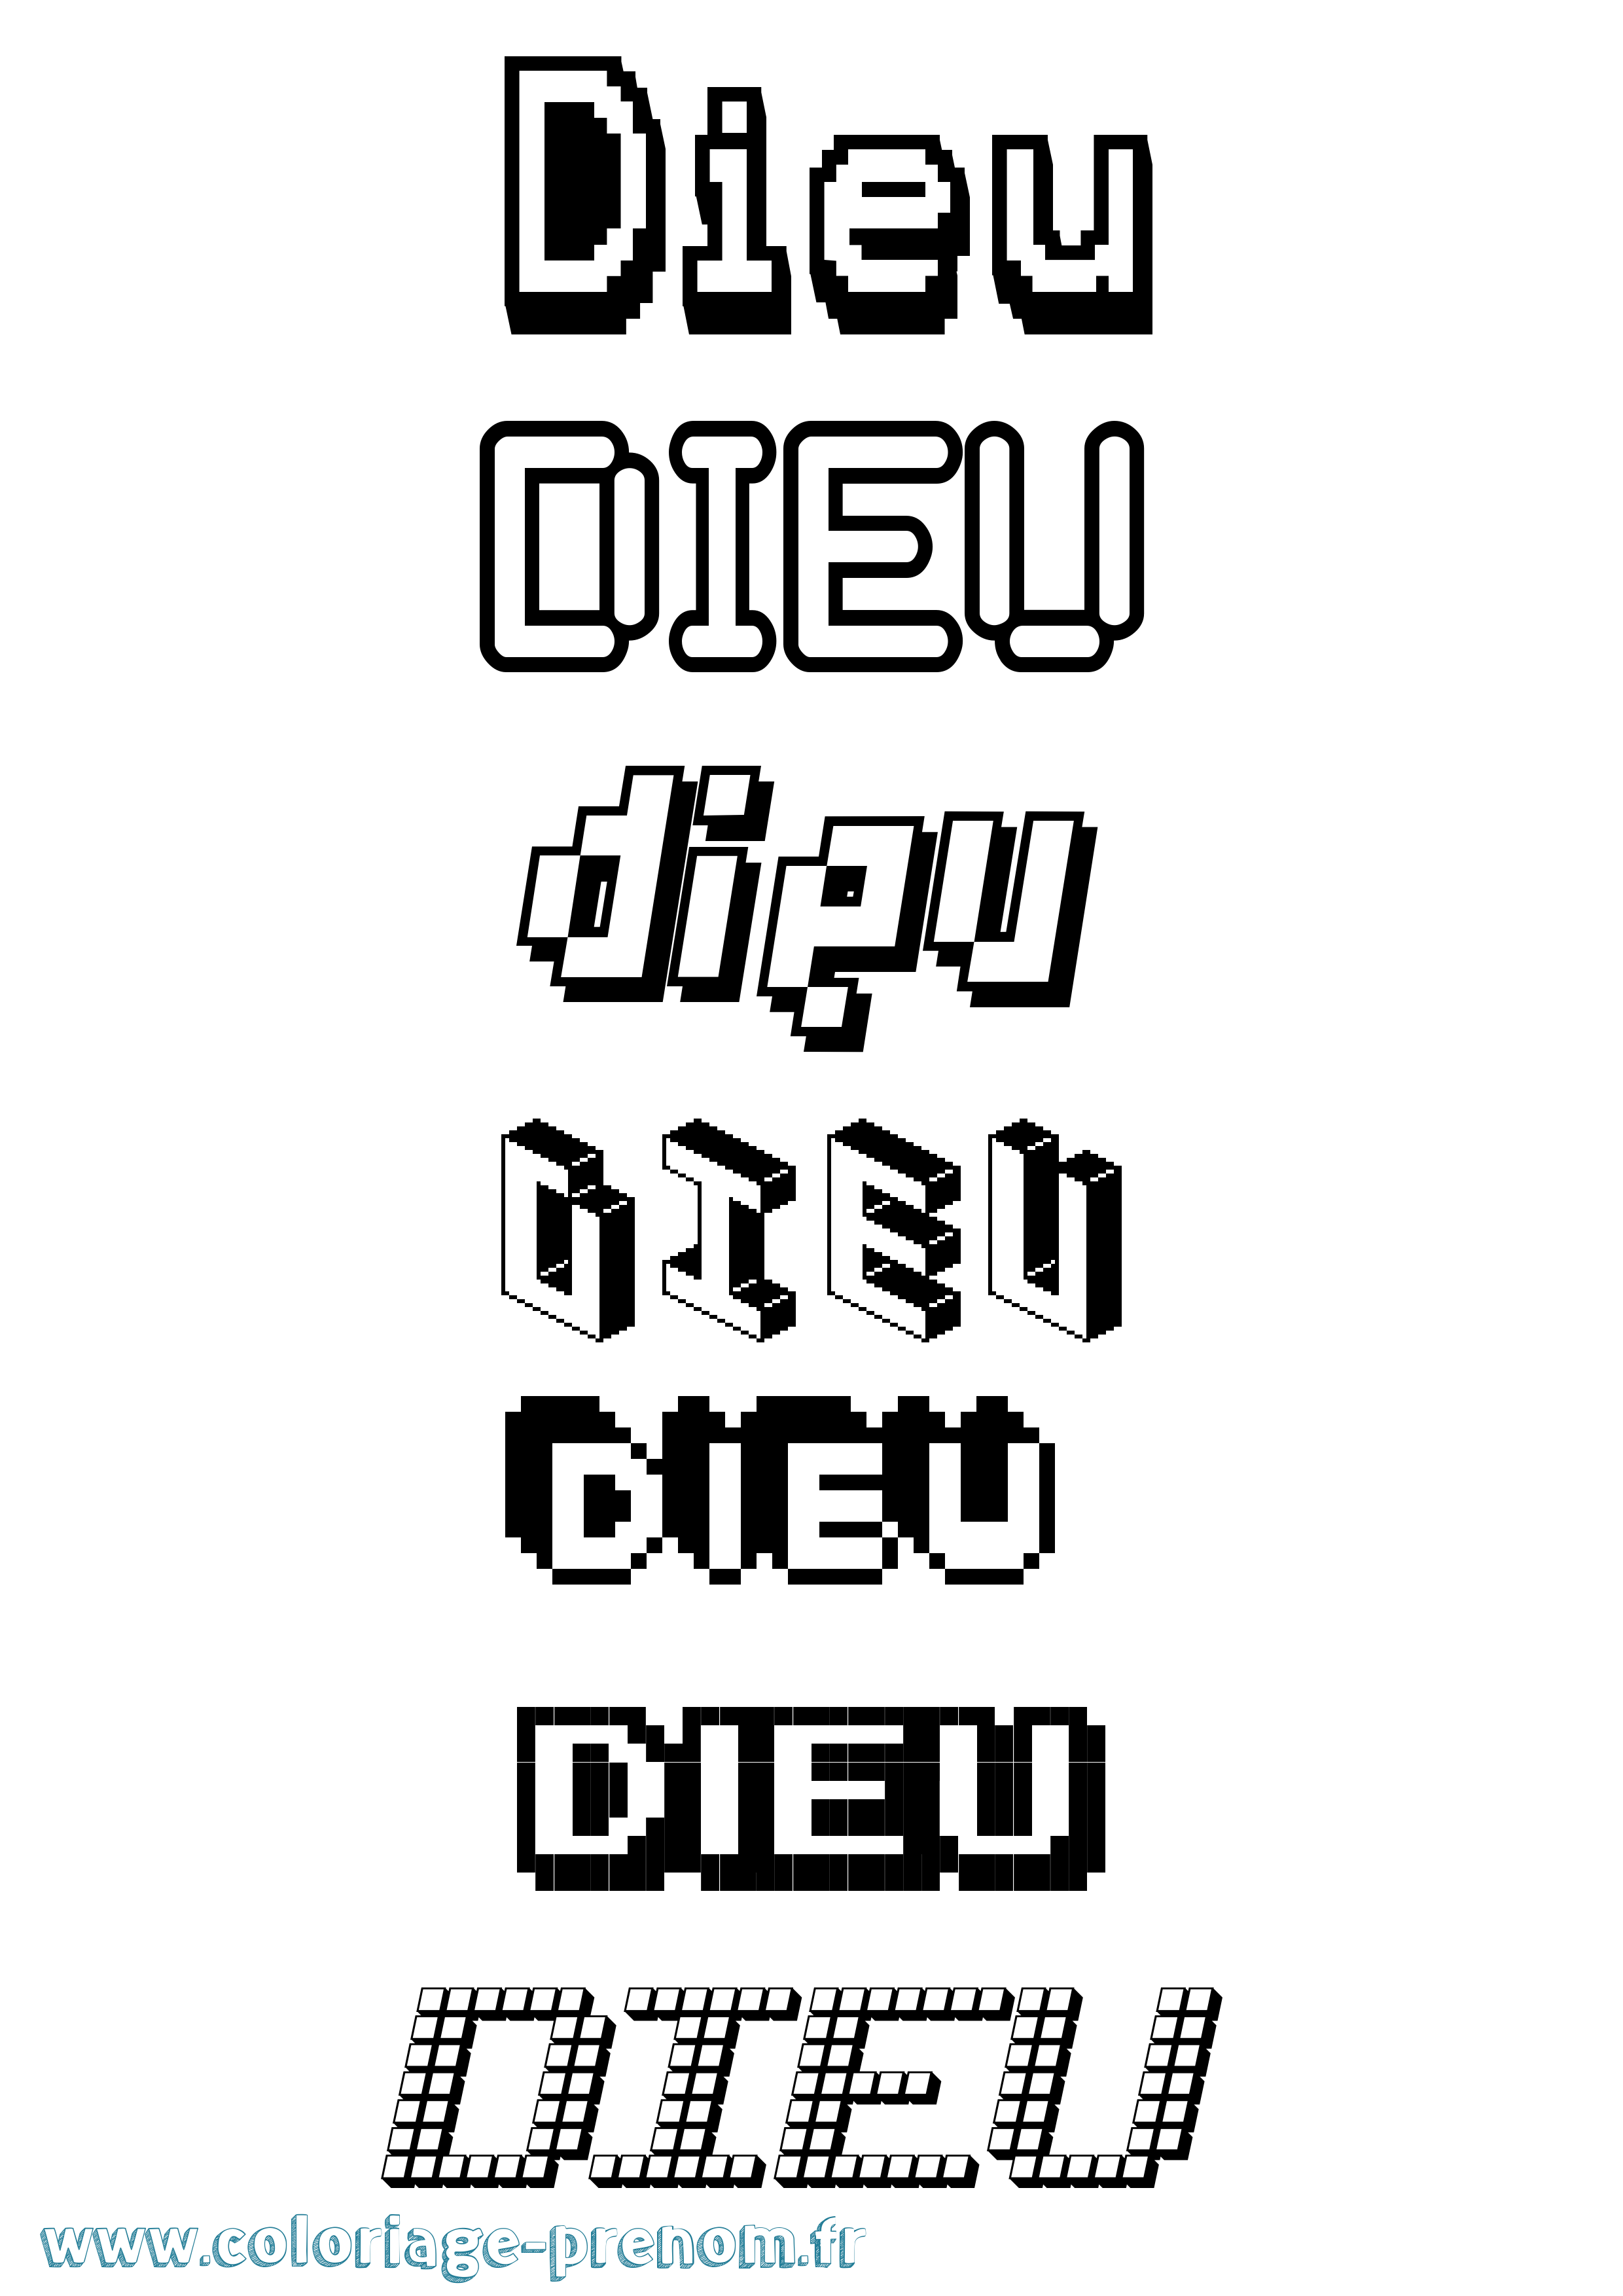 Coloriage prénom Dieu Pixel